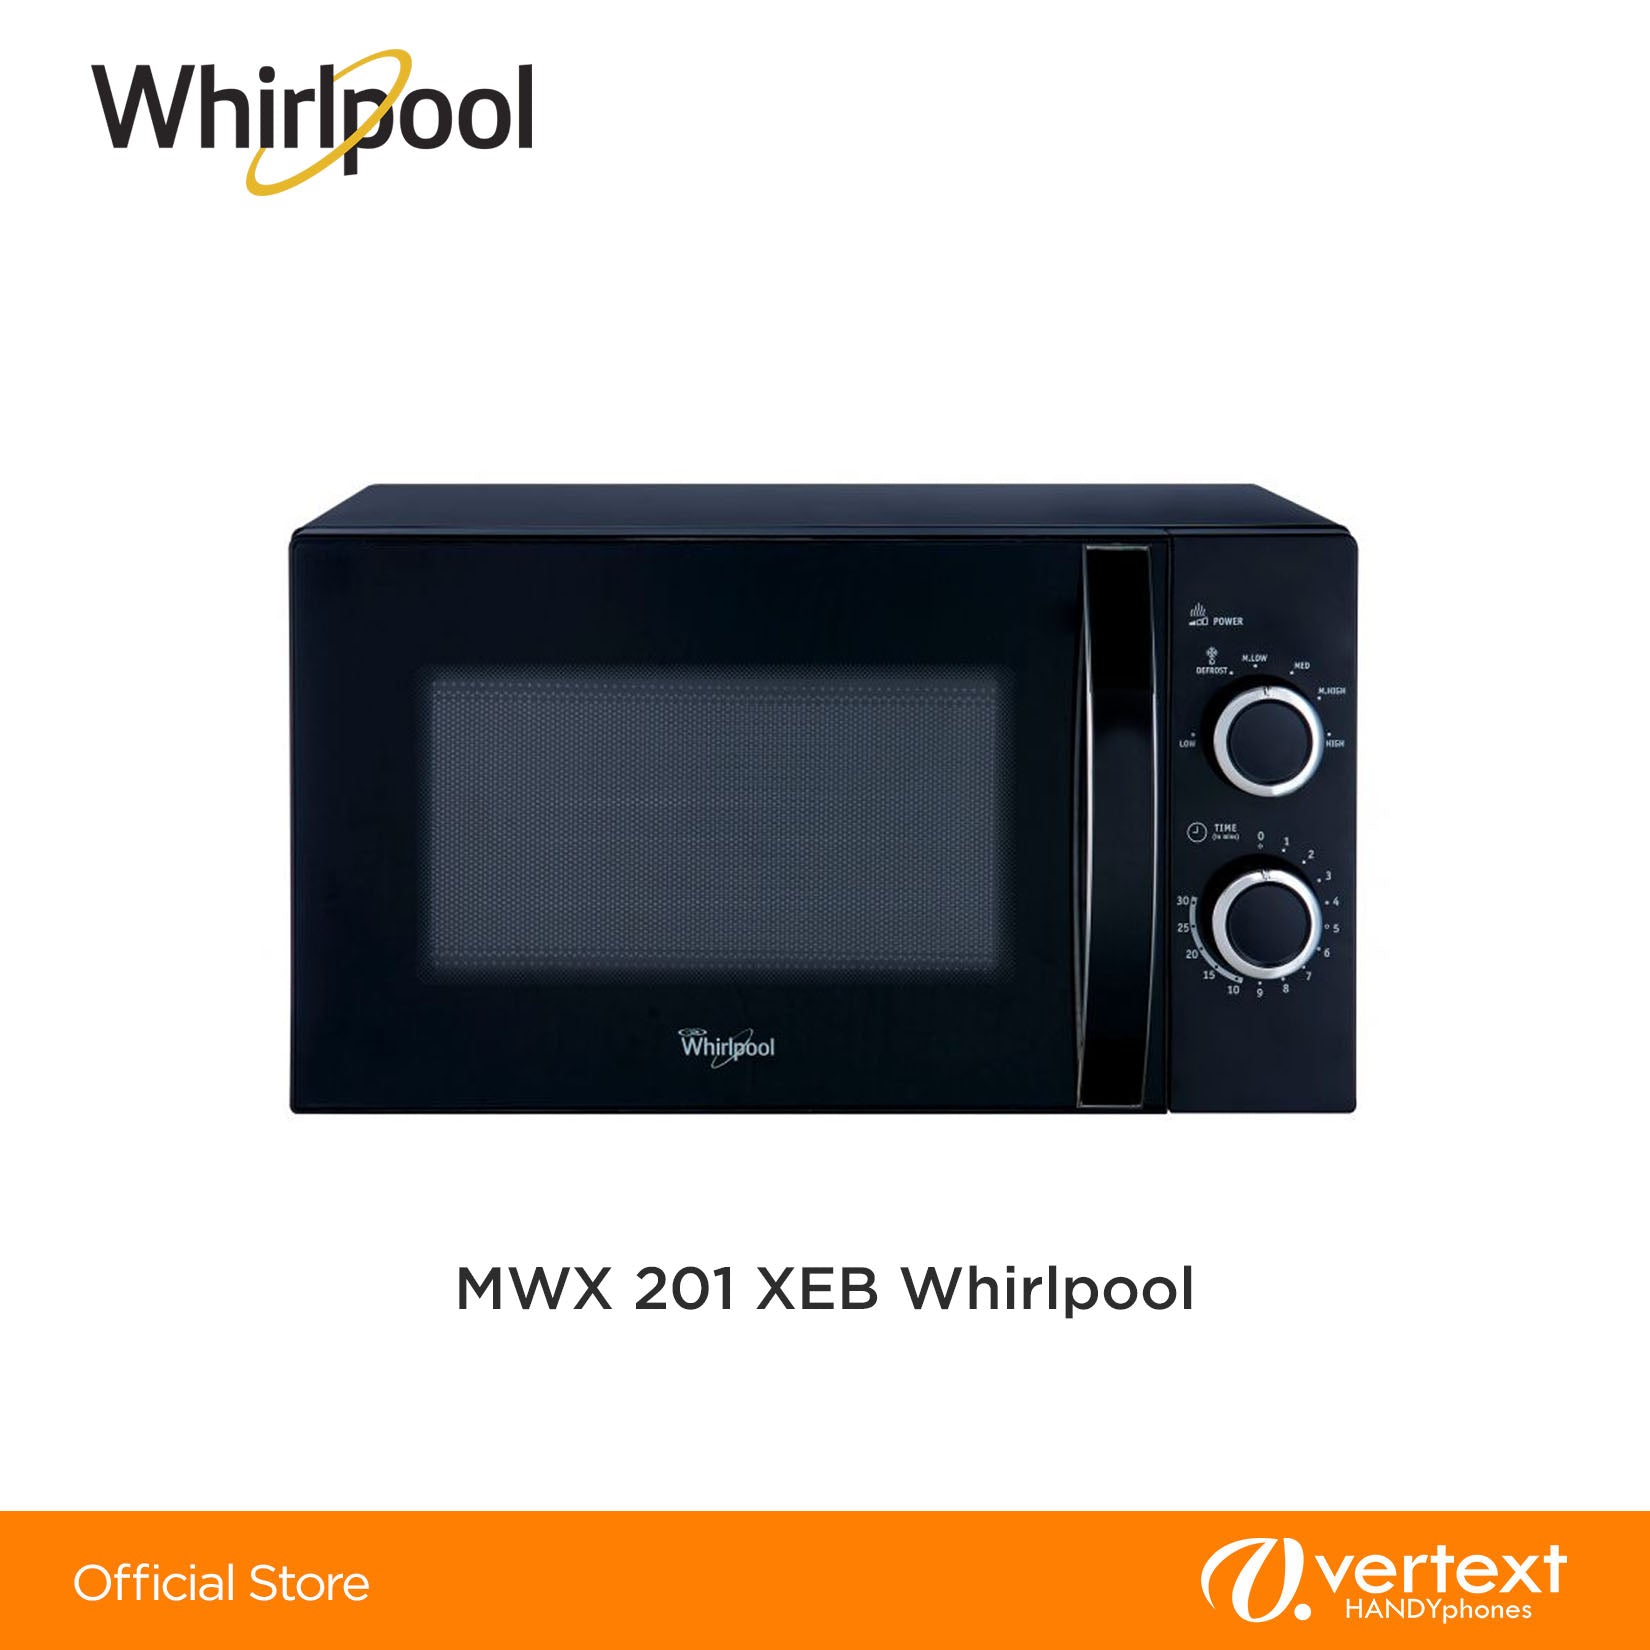 Whirlpool MWX201 XEB